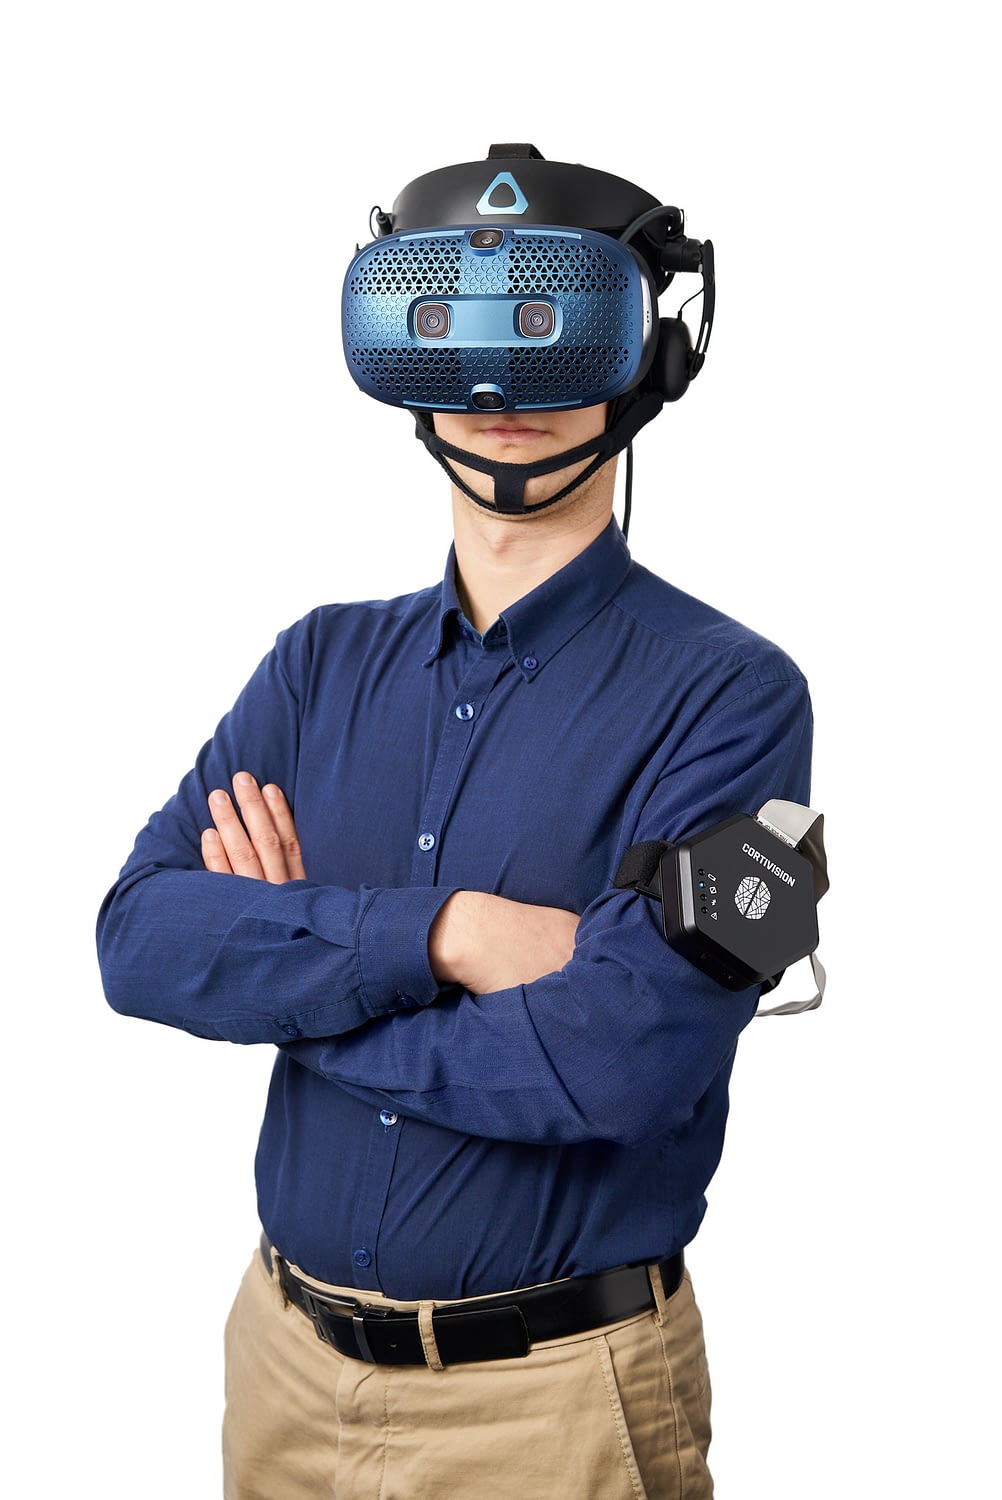 VR fNIRS integration headset